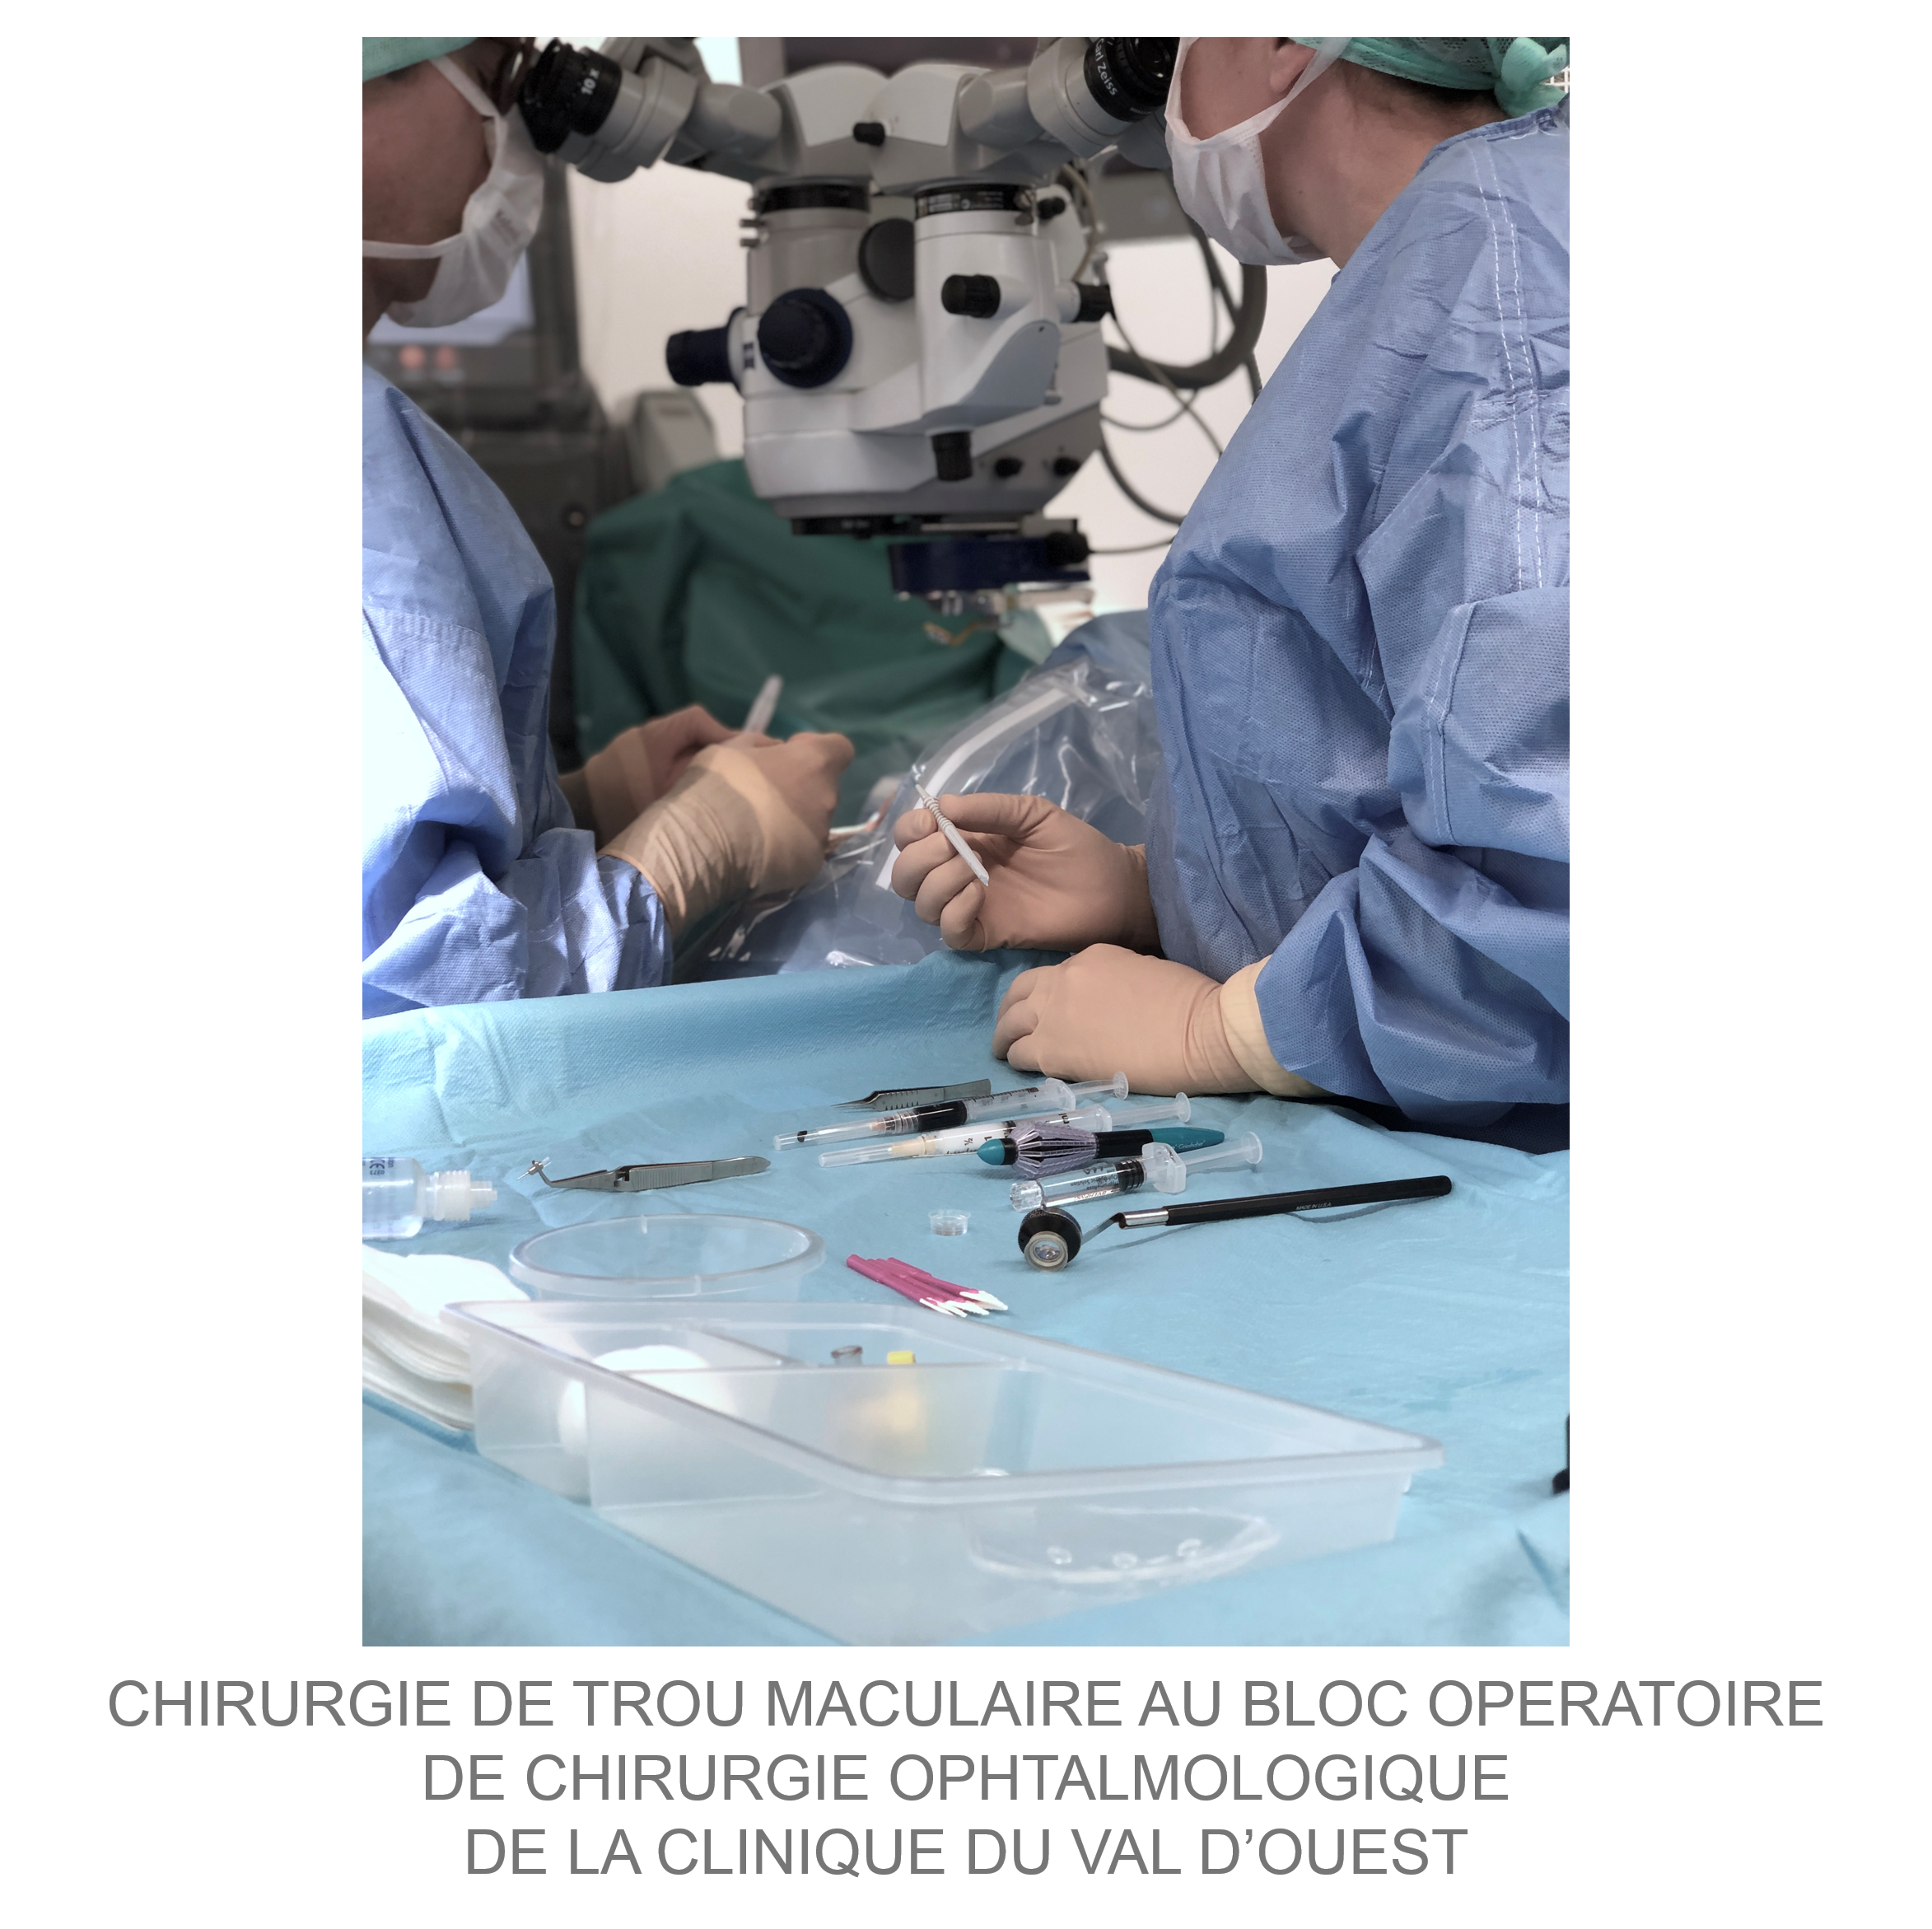 Chirurgie de trou maculaire au bloc opératoire de la clinique du Val d'Ouest à Lyon